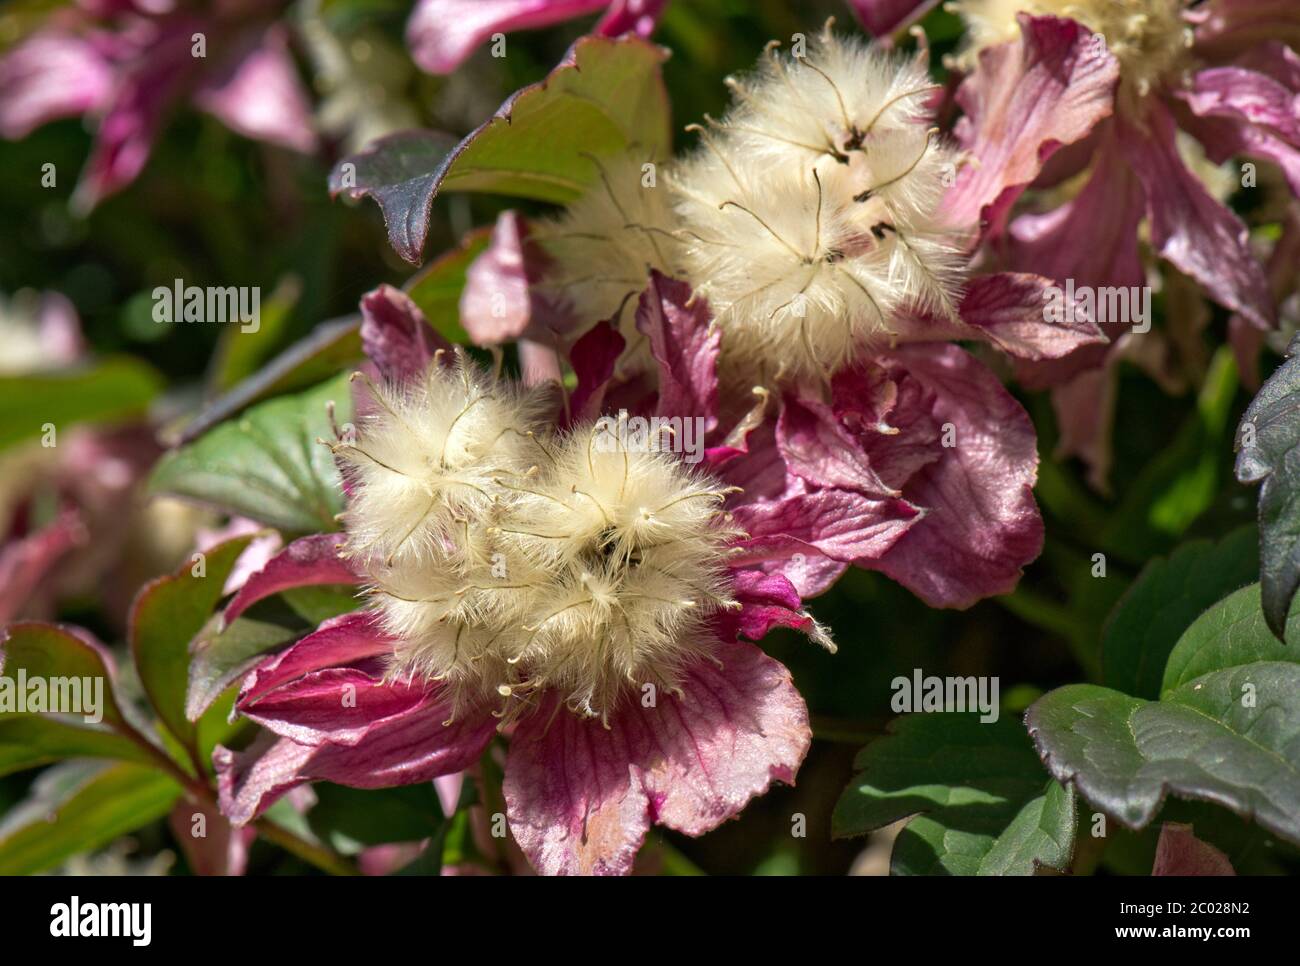 Rosa Blüten und flauschige Sämerköpfe von Clematis montana 'Broughton Star' ein großer Klettergarten Strauch, Berkshire, Mai Stockfoto